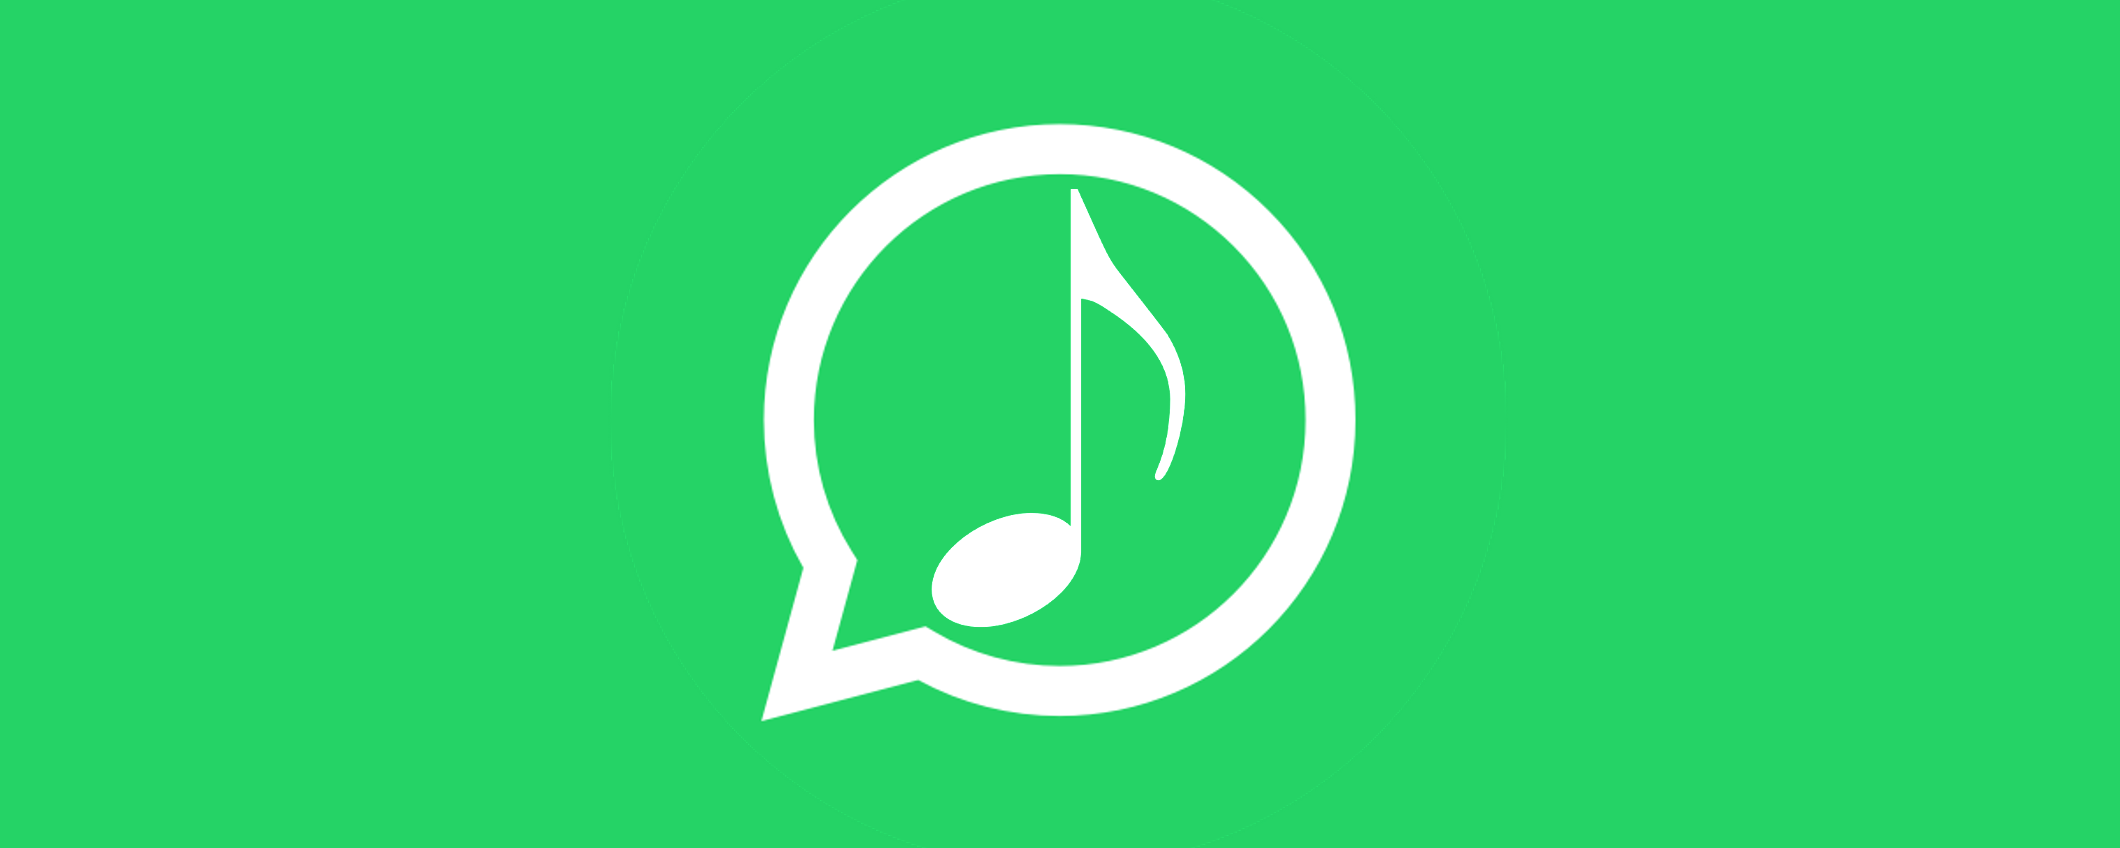 WhatsApp: arriva una nuova funzionalità per condividere musica